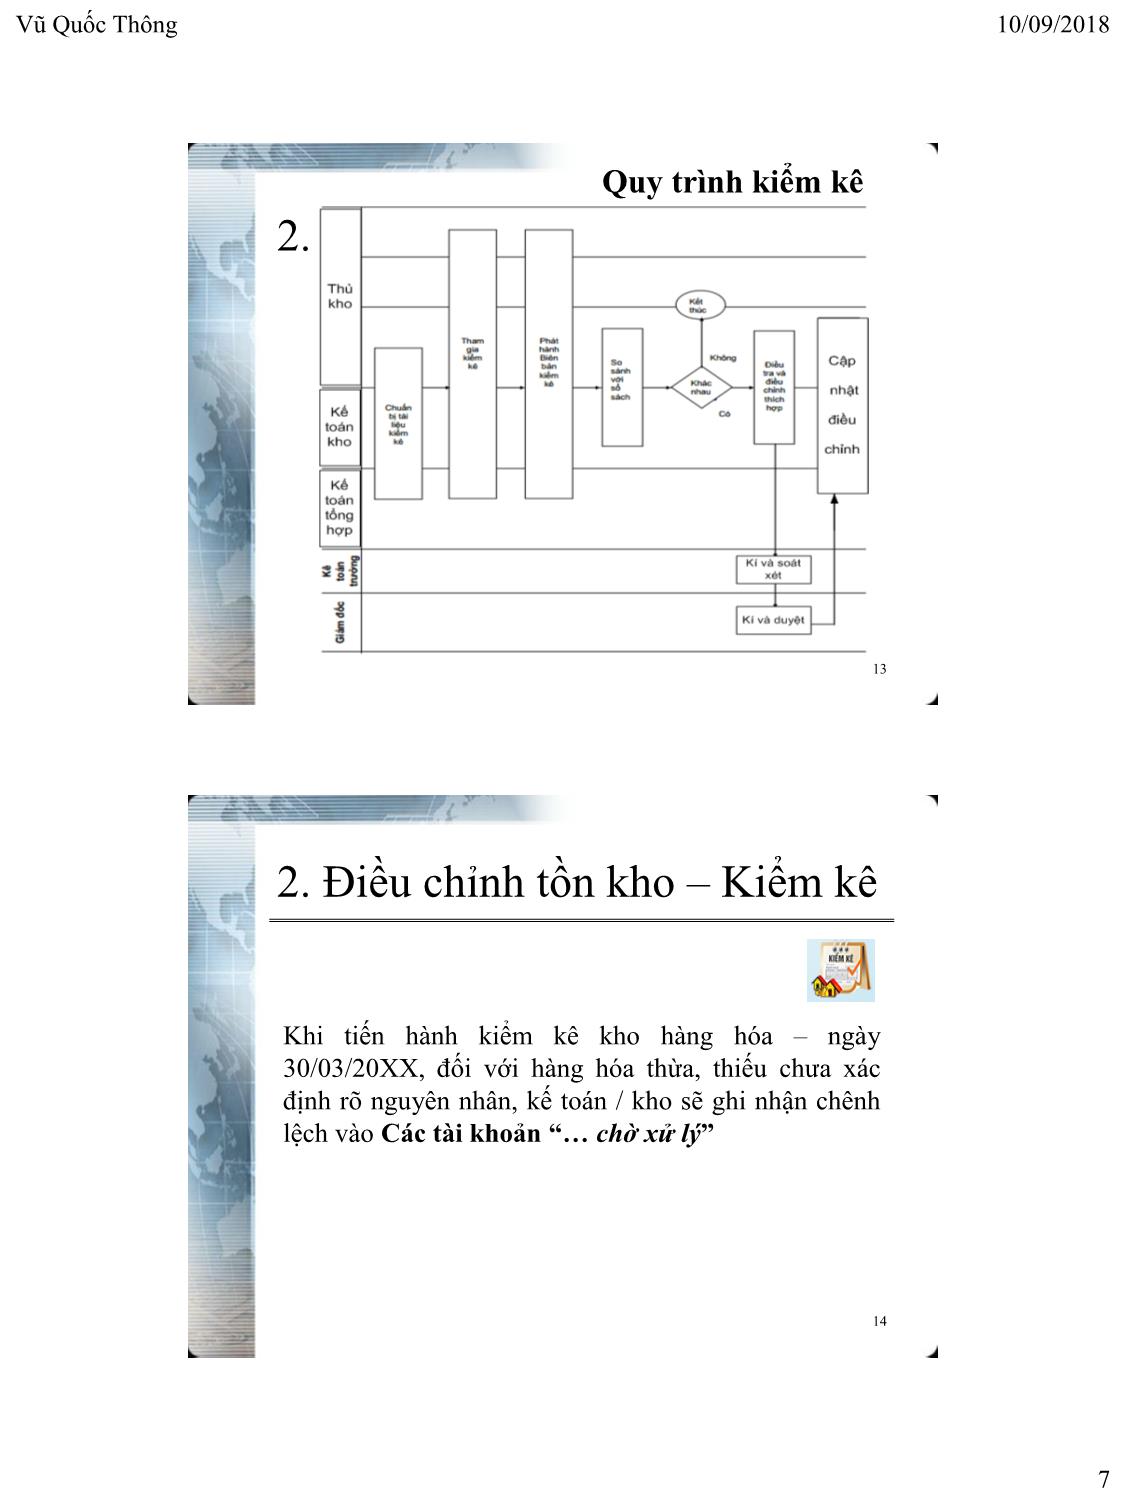 Bài giảng Hệ thống thông tin kế toán 2 - Chương 4: Kế toán tổng hợp trên phần mềm - Vũ Quốc Thông trang 7